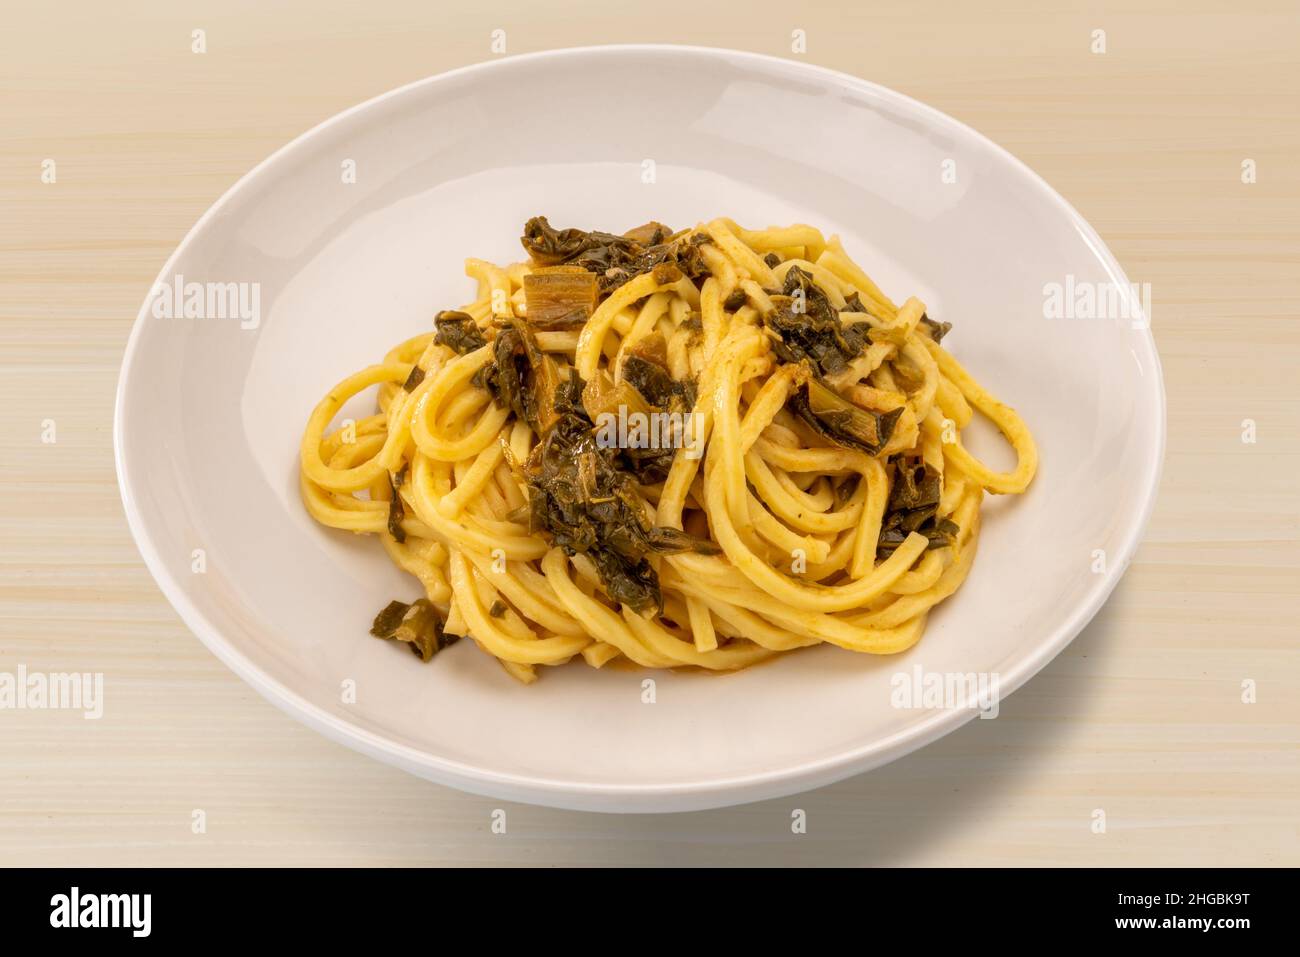 Italienische Spaghetti alla chitarra mit Rüben-Tops, hausgemachte frische Pasta aus den Abruzzen und Apulien Stockfoto